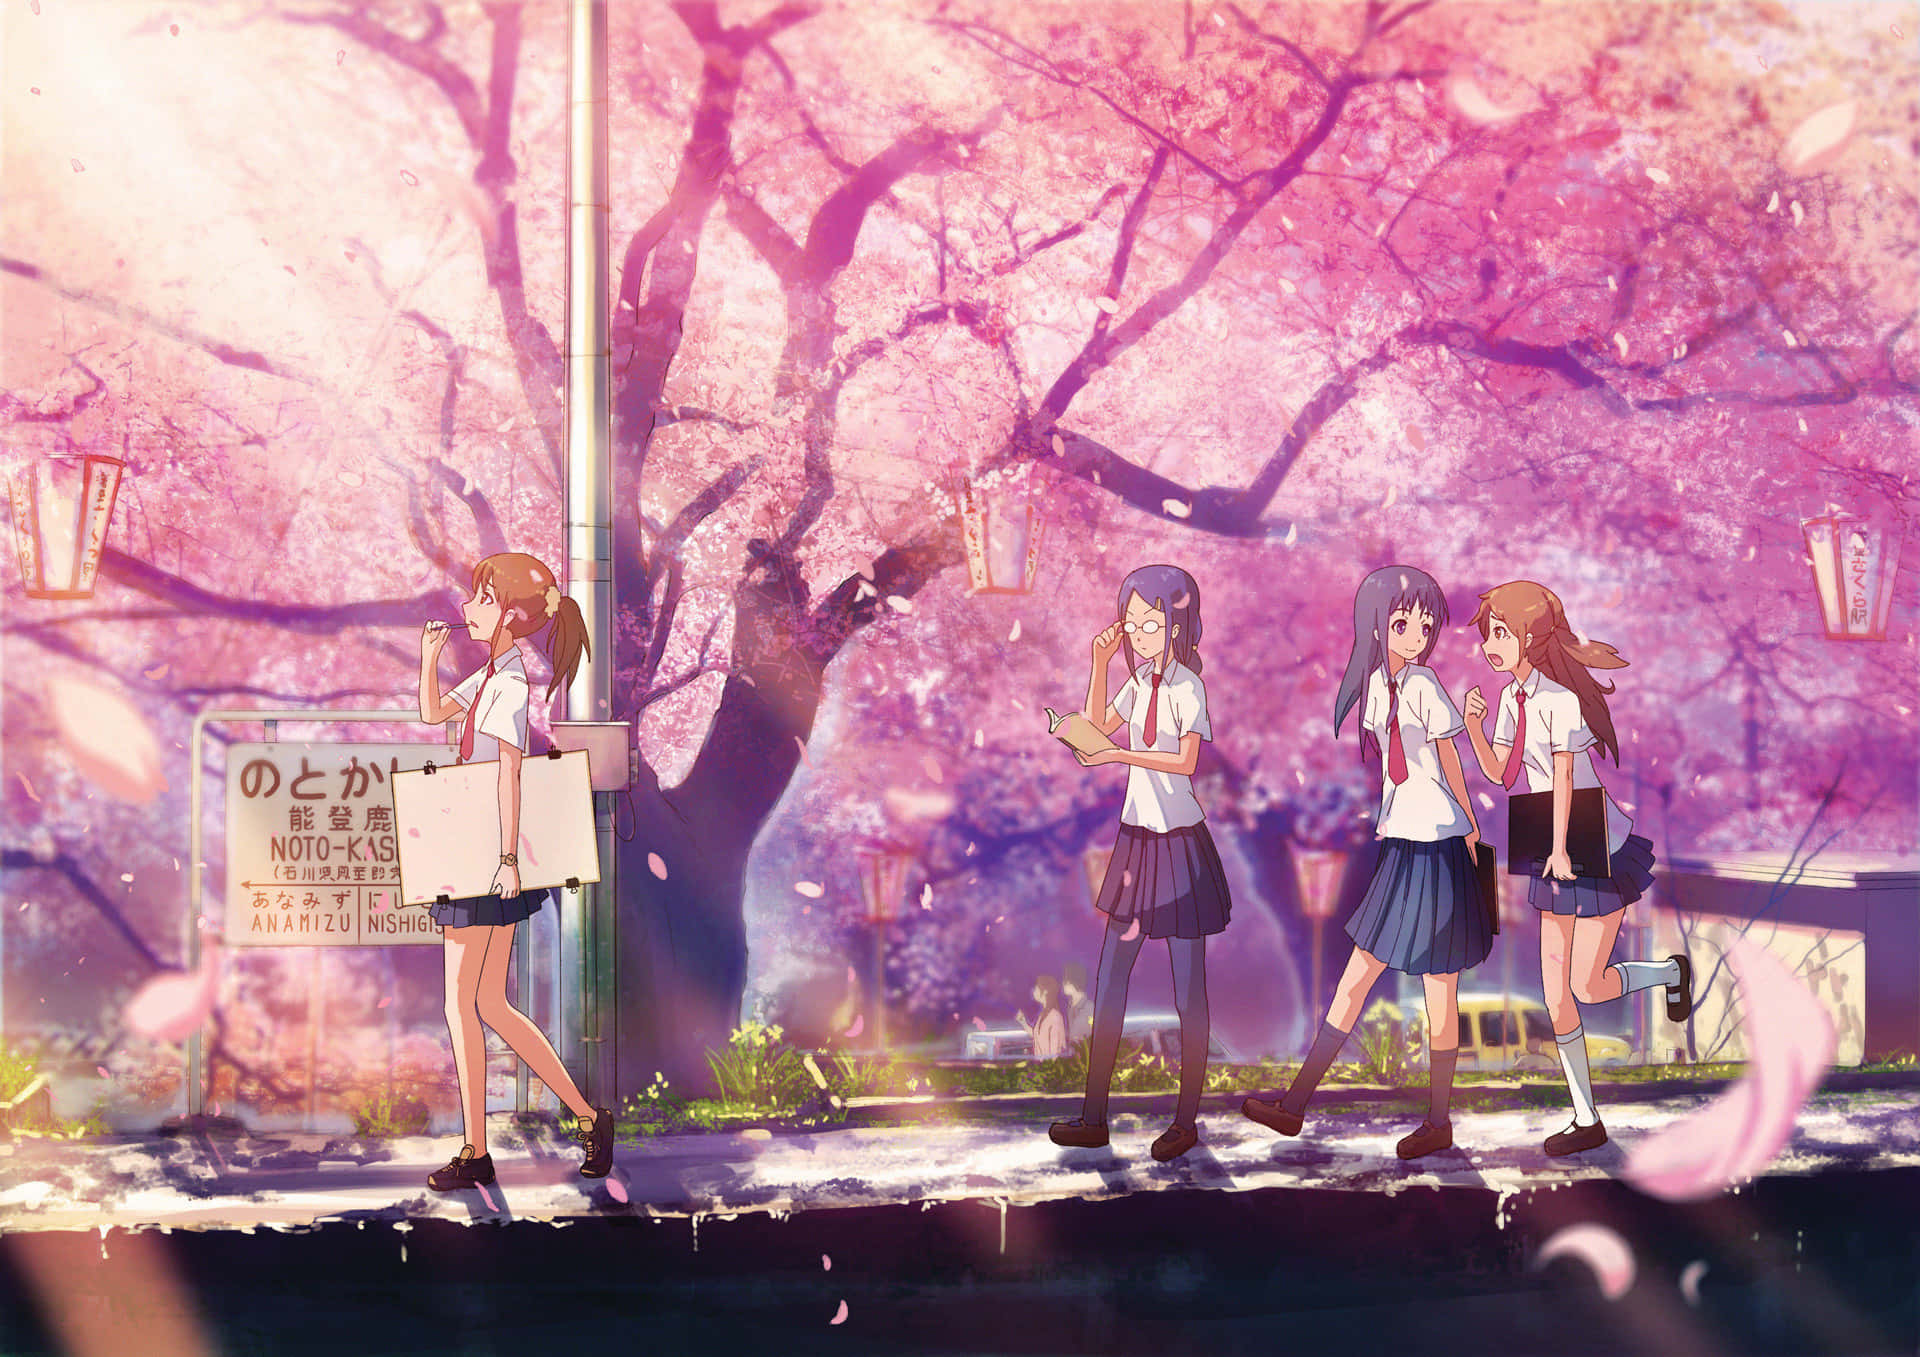 Denskrøbelige Skønhed Af Lyserøde Sakura Blomster Mod En Blå Himmel, Skaber Et Storslået Syn.